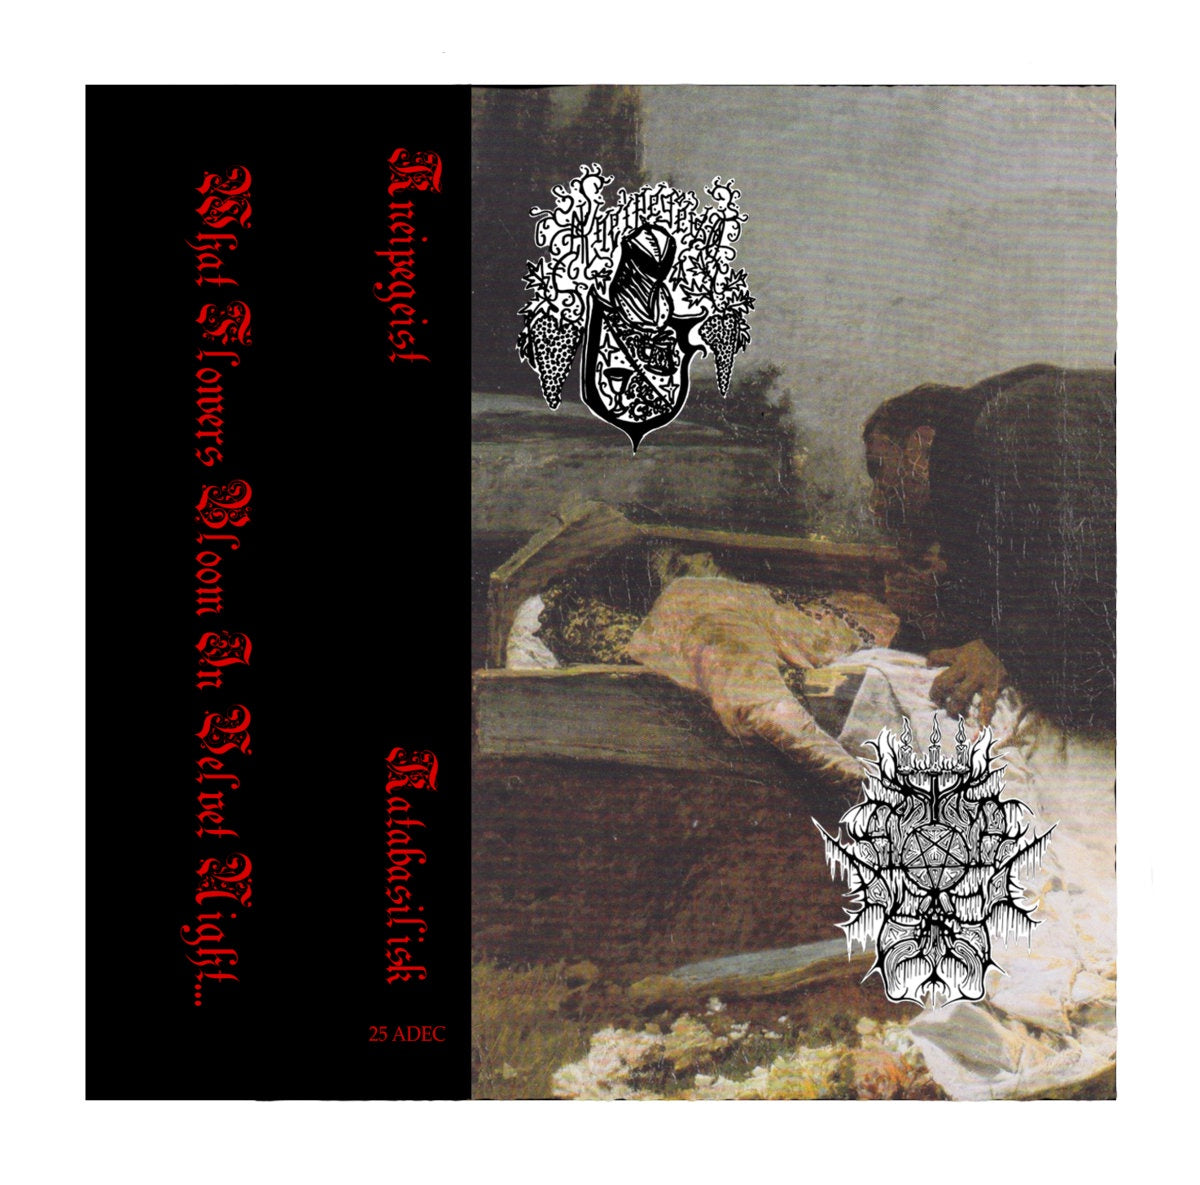 Katabasilisk, Kneipgeist - What Flowers Bloom In Velvet Night - New Cassette 2021 American Decline Tape - Chicago Local Black Metal